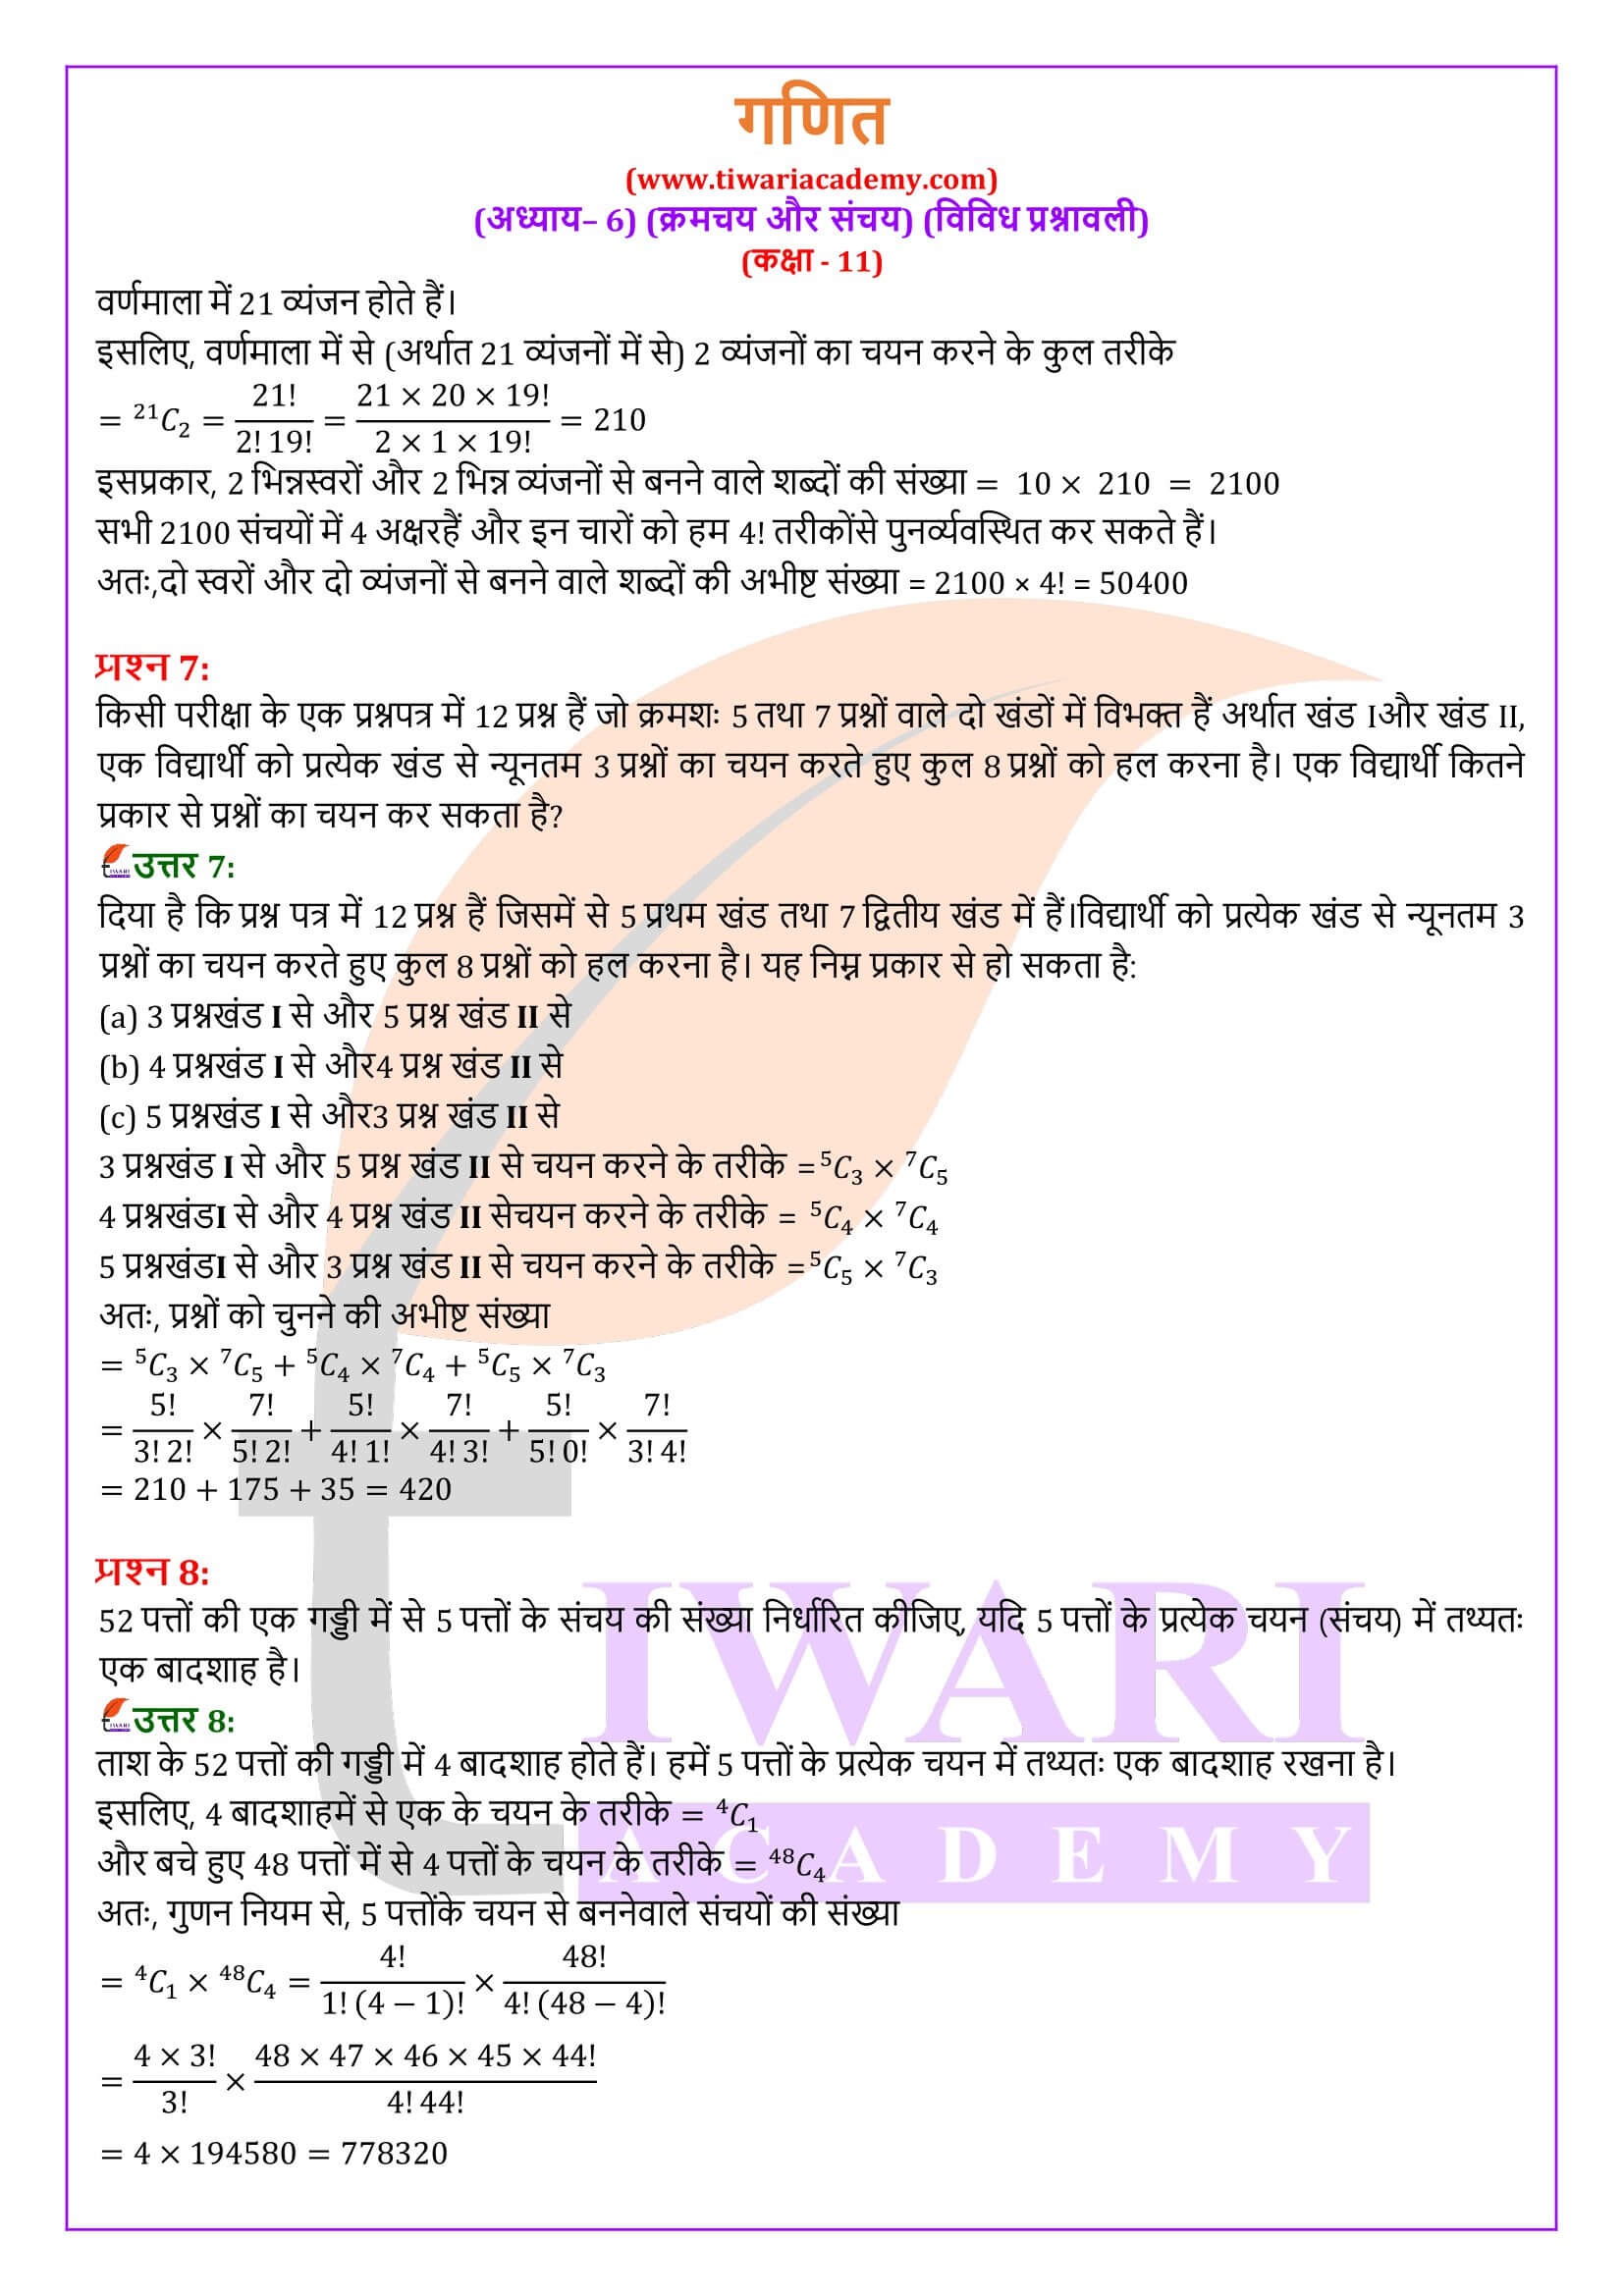 कक्षा 11 गणित अध्याय 6 विविध प्रश्नावली हिंदी मीडियम में हल